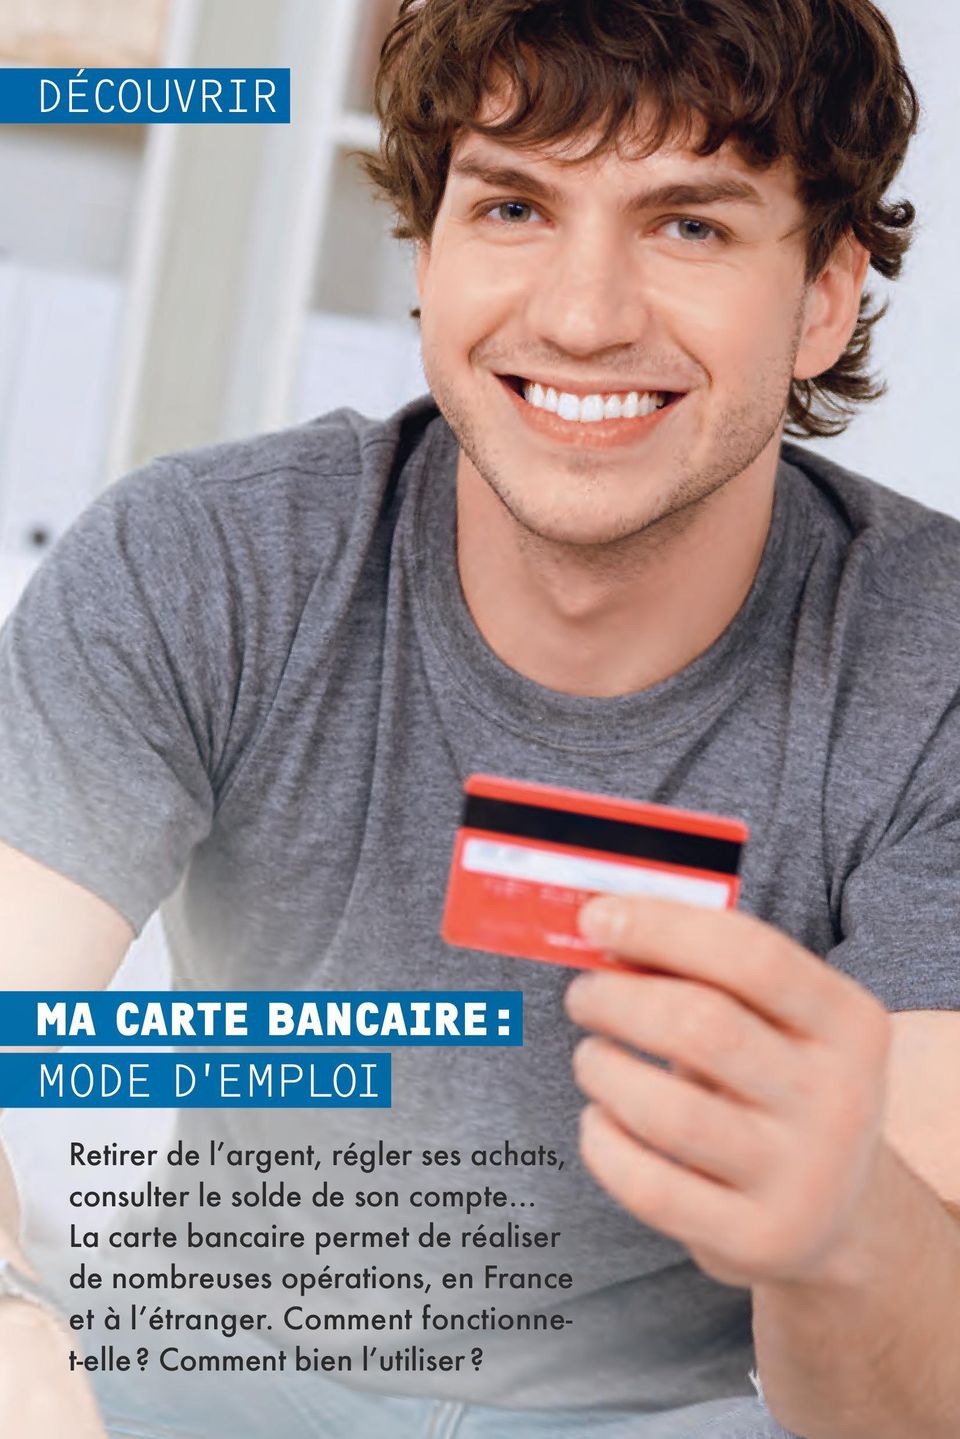 bancaire permet de réaliser de nombreuses opérations, en France